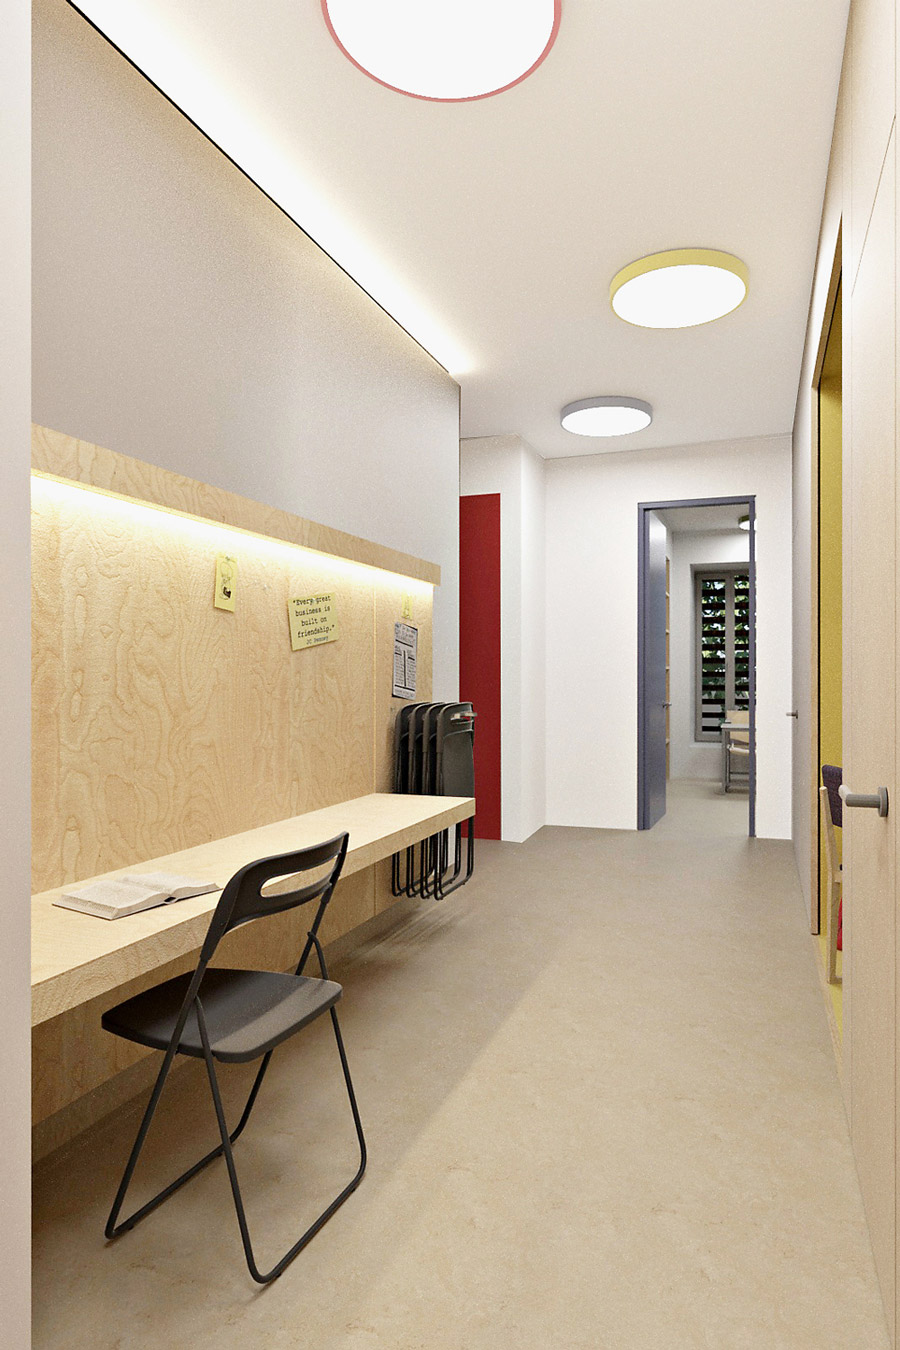 Corridor interior design of a tutorial institute in Nicosia -Cyprus.